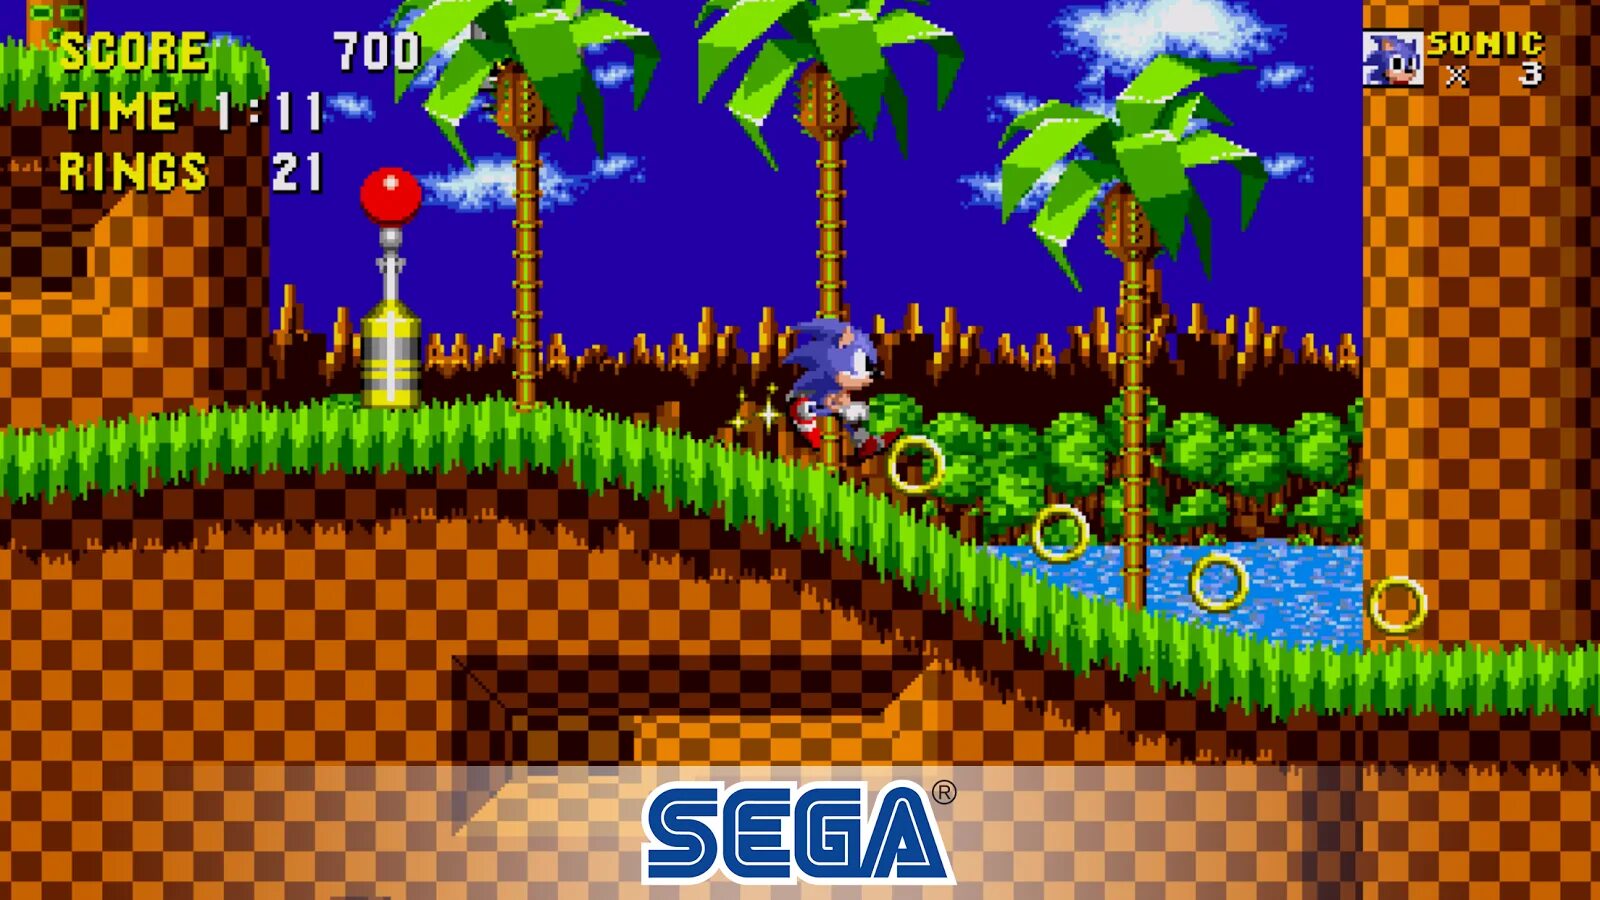 Sonic на сеге. Sonic the Hedgehog игра Sega. Соник 1 игра на сеге. Игра Sonic the Hedgehog 3 Sega. Ежик Соник игра сега.